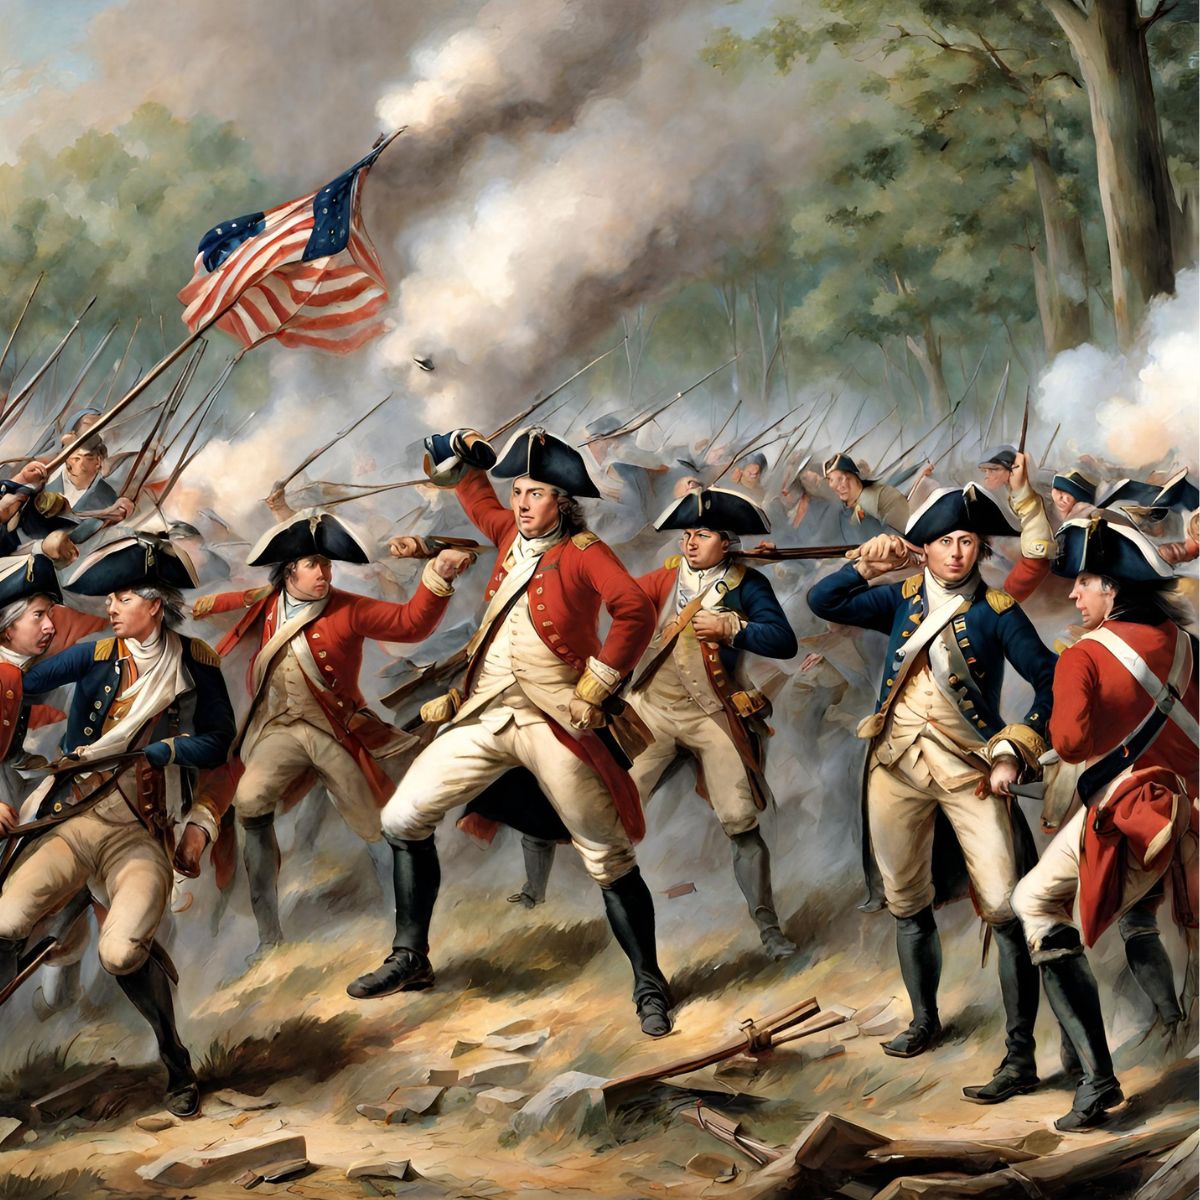 Revolutionary War Battle scene